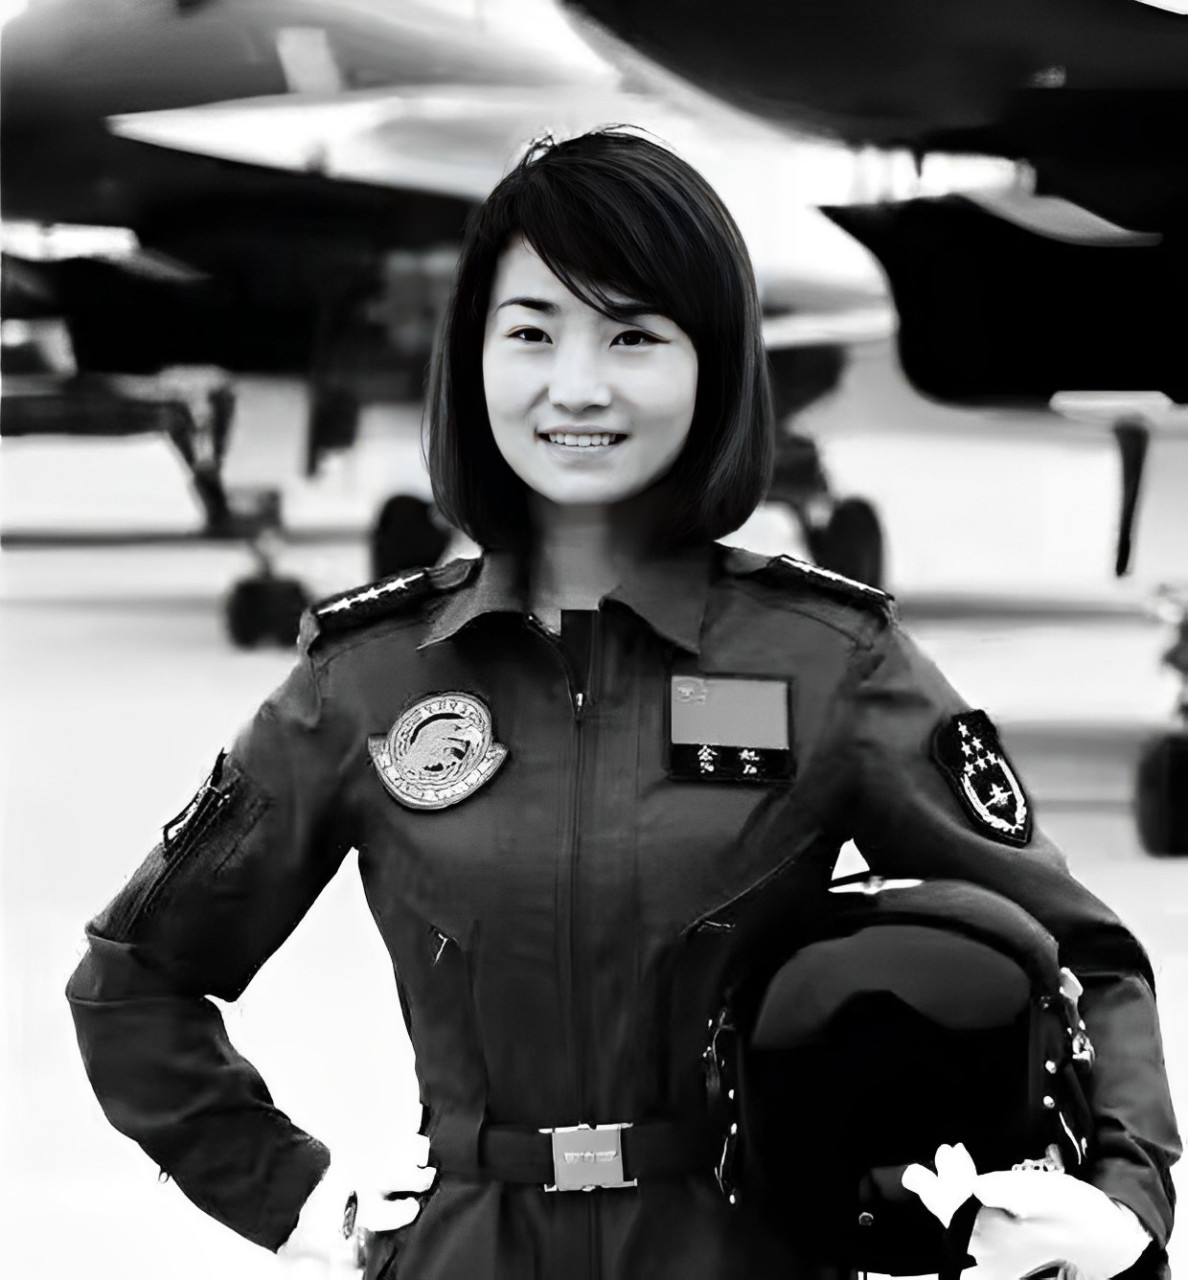 余旭,代号金孔雀,是中国首批战斗机女飞行员之一,也是歼